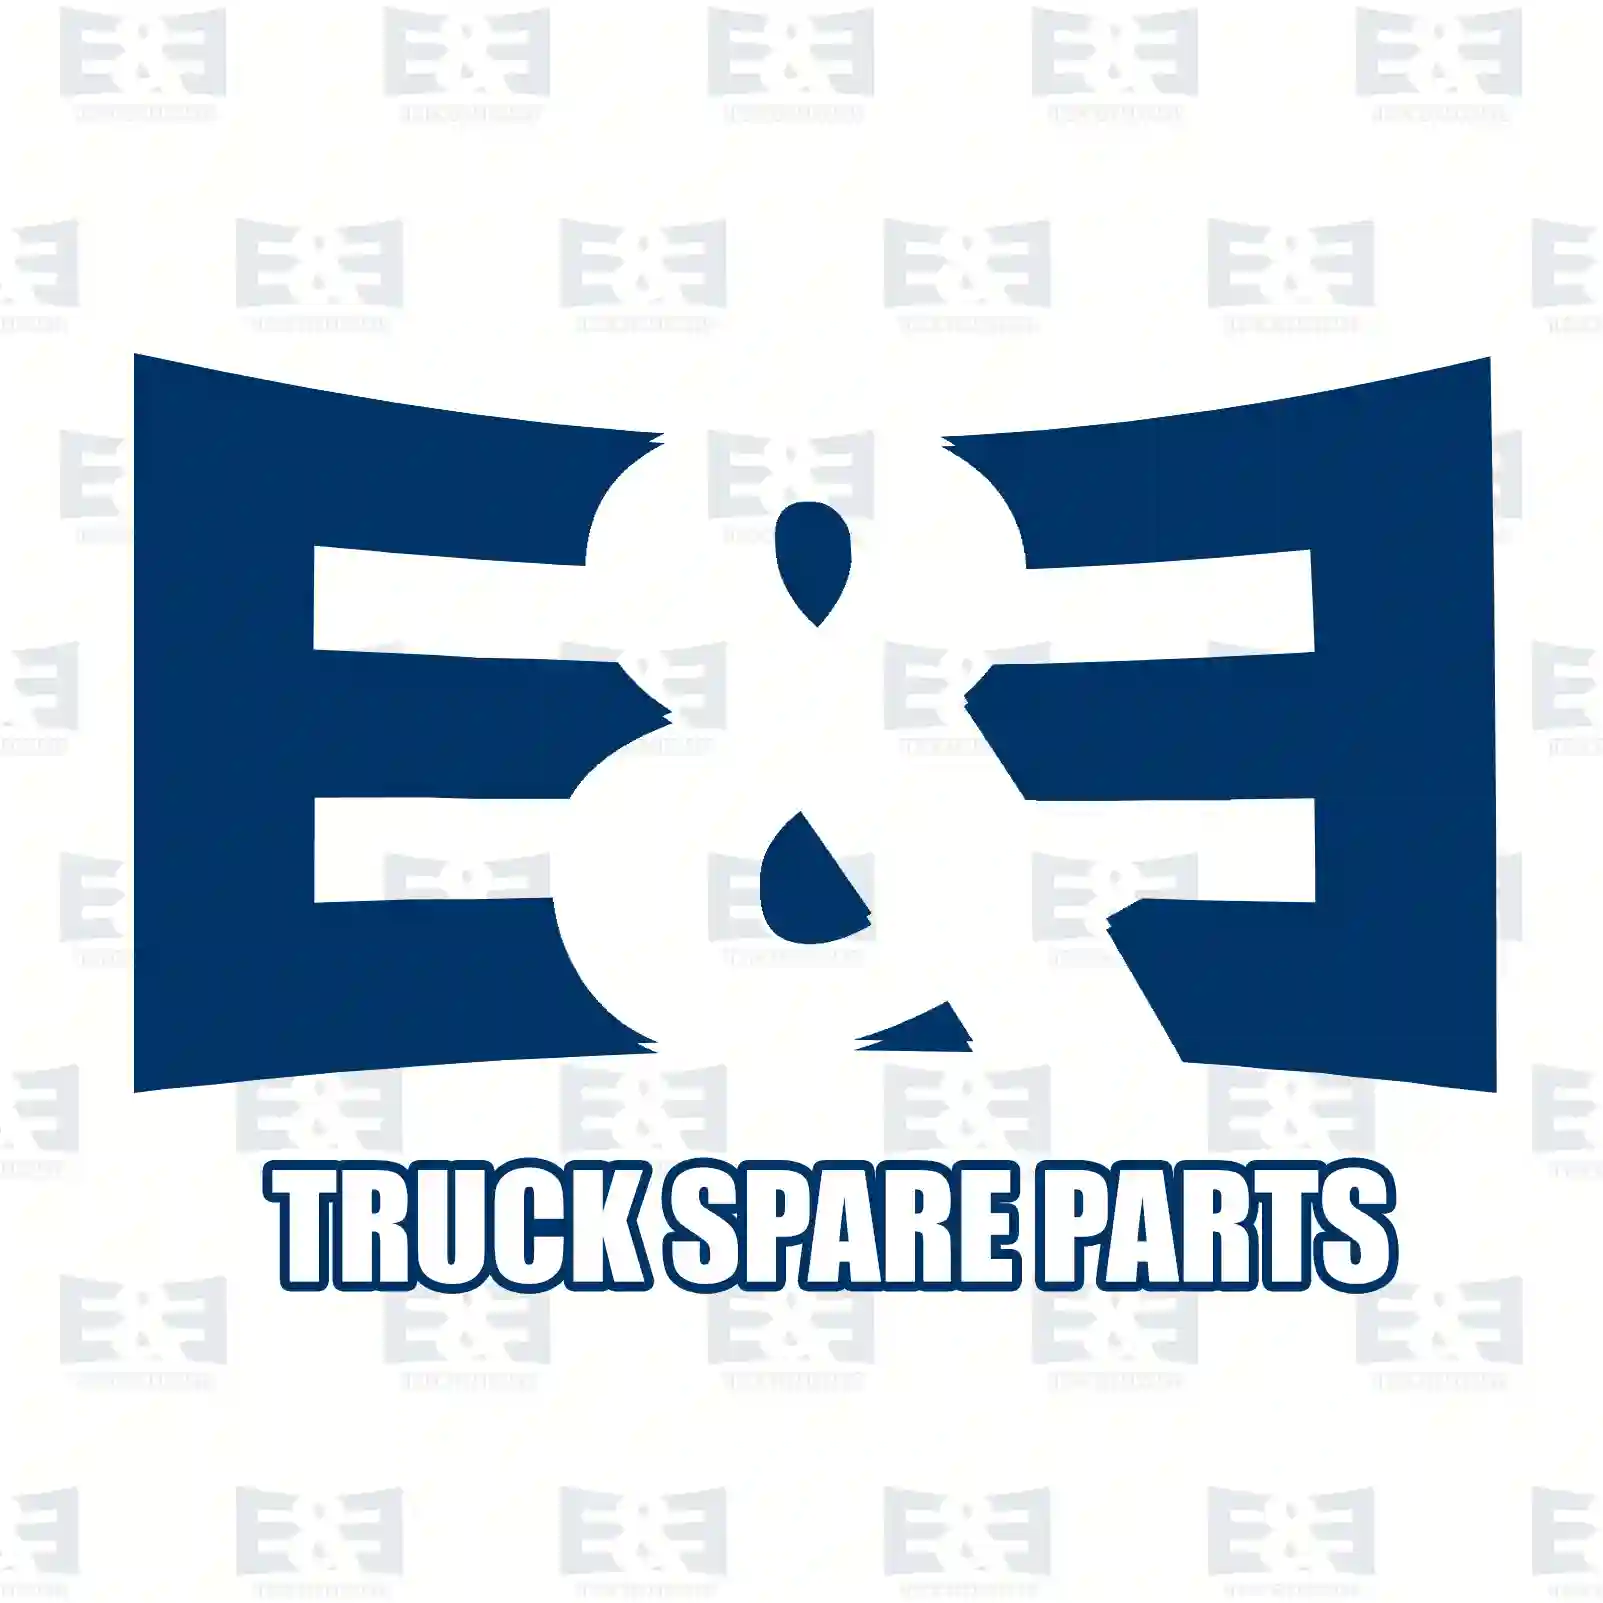 Drive shaft, 2E2279594, 1510229, 1857633, 1936438, 2018788 ||  2E2279594 E&E Truck Spare Parts | Truck Spare Parts, Auotomotive Spare Parts Drive shaft, 2E2279594, 1510229, 1857633, 1936438, 2018788 ||  2E2279594 E&E Truck Spare Parts | Truck Spare Parts, Auotomotive Spare Parts